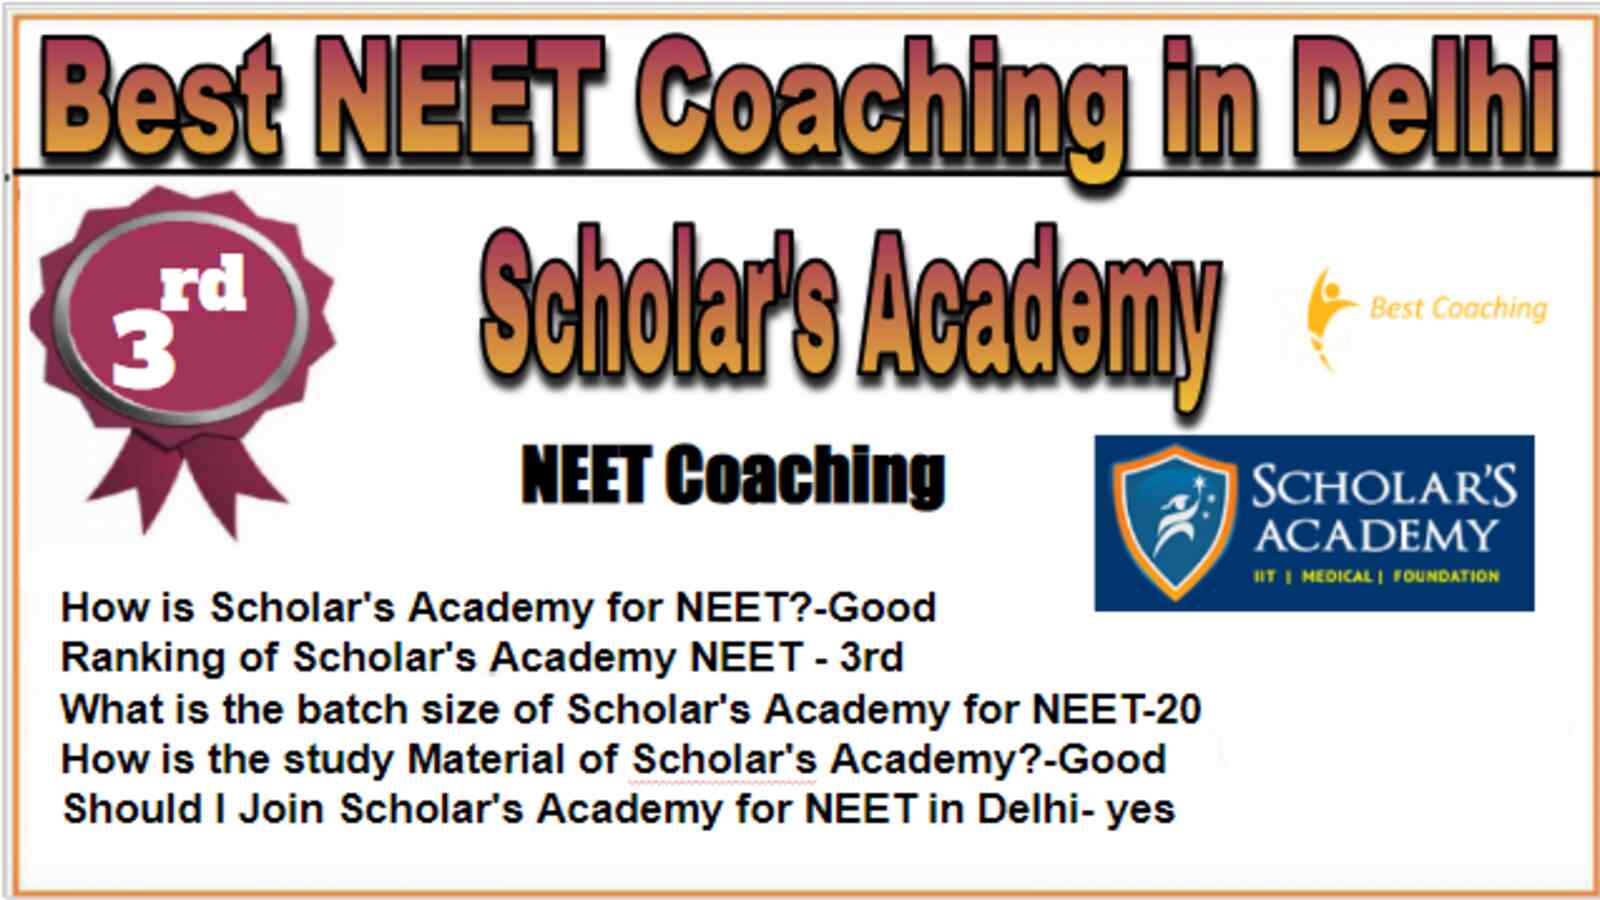 Rank 3 Best NEET Coachings in Delhi